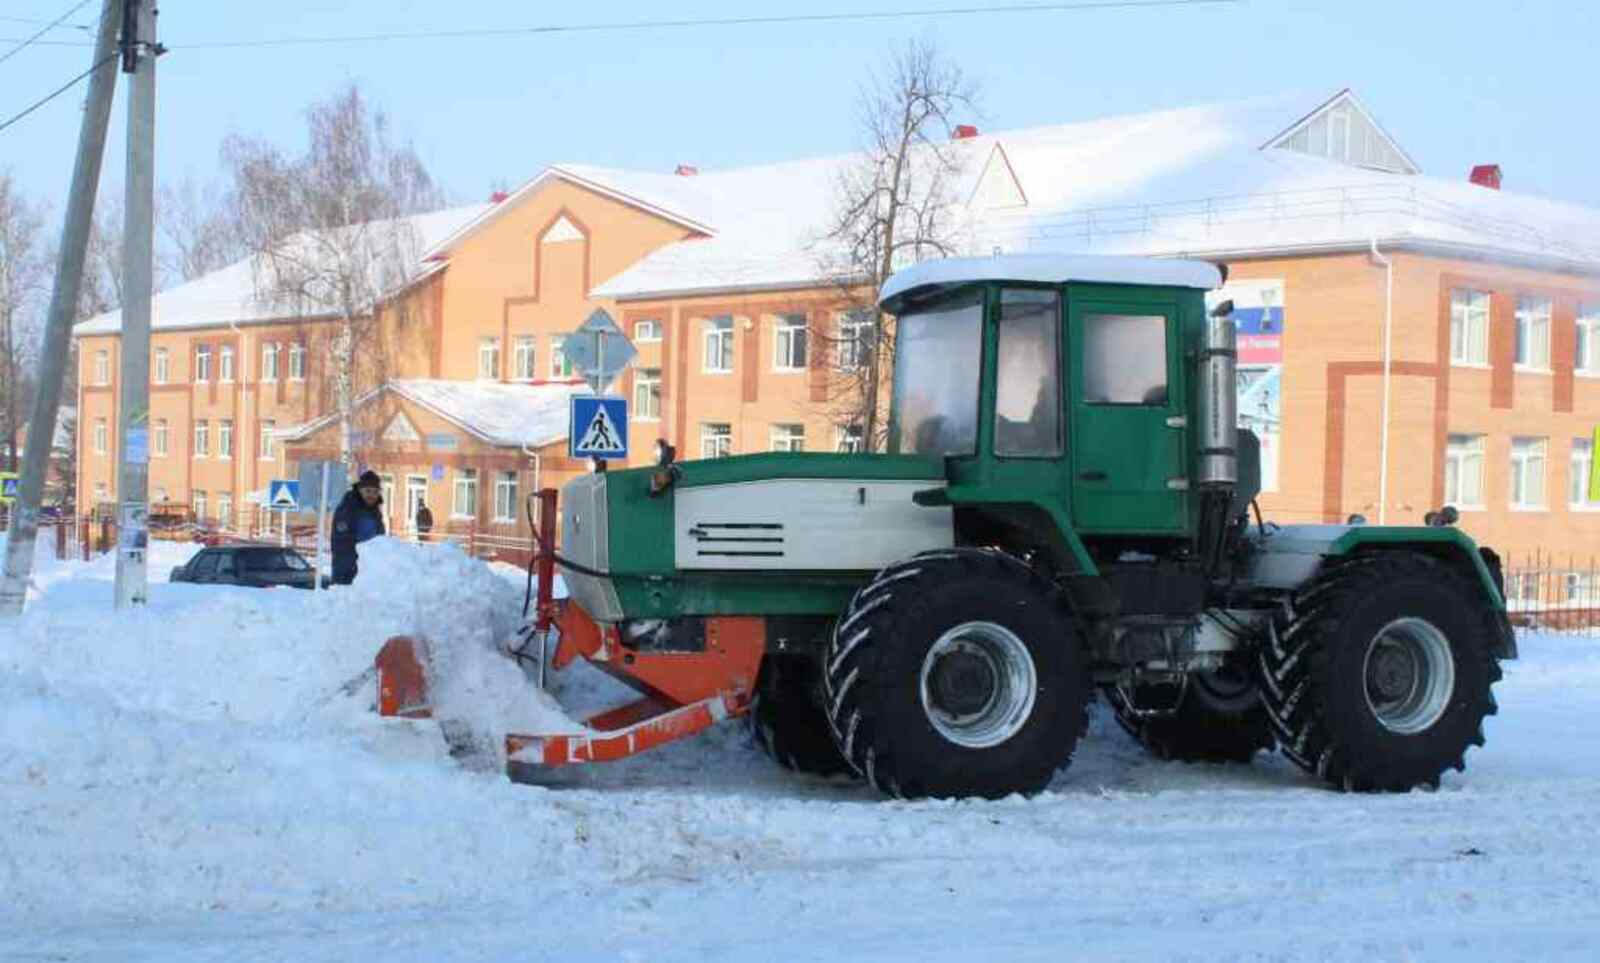 Мощный универсальный трактор ХТА-220 уже хорошо зарекомендовал себя в устранении последствий недавних снегопадов.